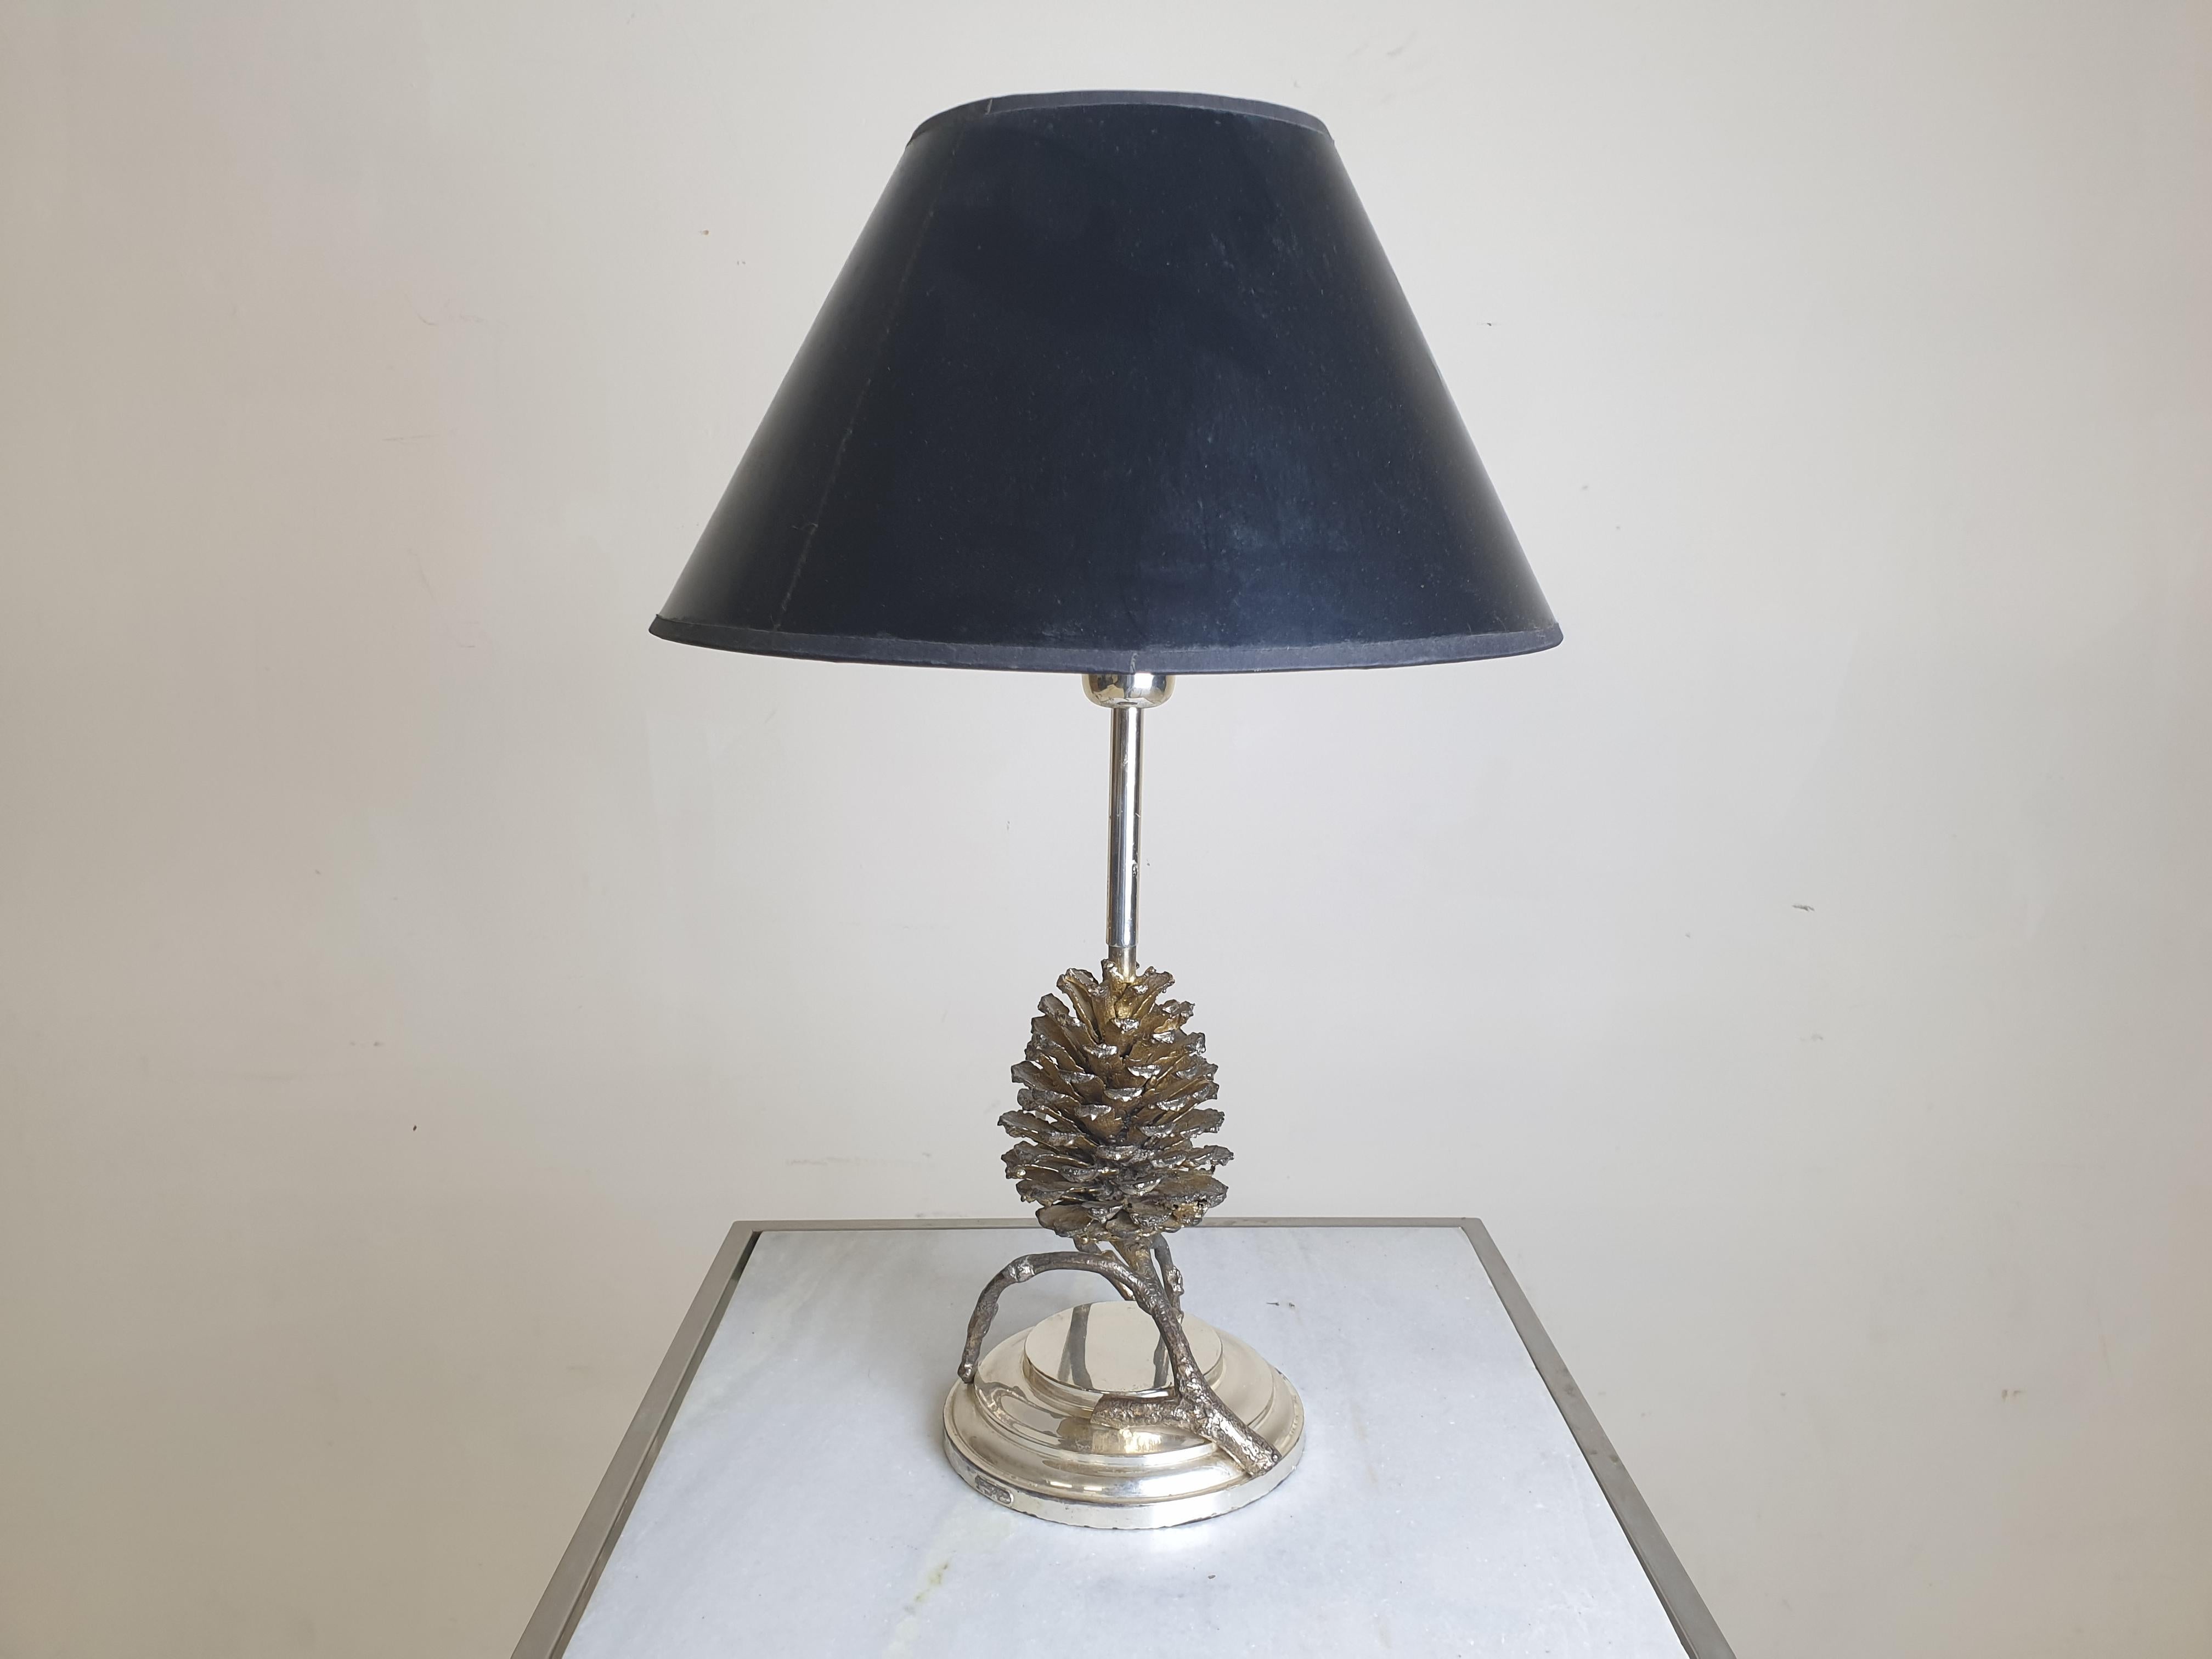 Una lussuosa lampada da tavolo di alta qualità, realizzata da Franco Lapini in Italia negli anni Settanta.

Franco Lapini è un produttore di articoli di lusso. Tutto è realizzato a mano ed è un oggetto unico.

La nostra lampada è una pigna di bronzo